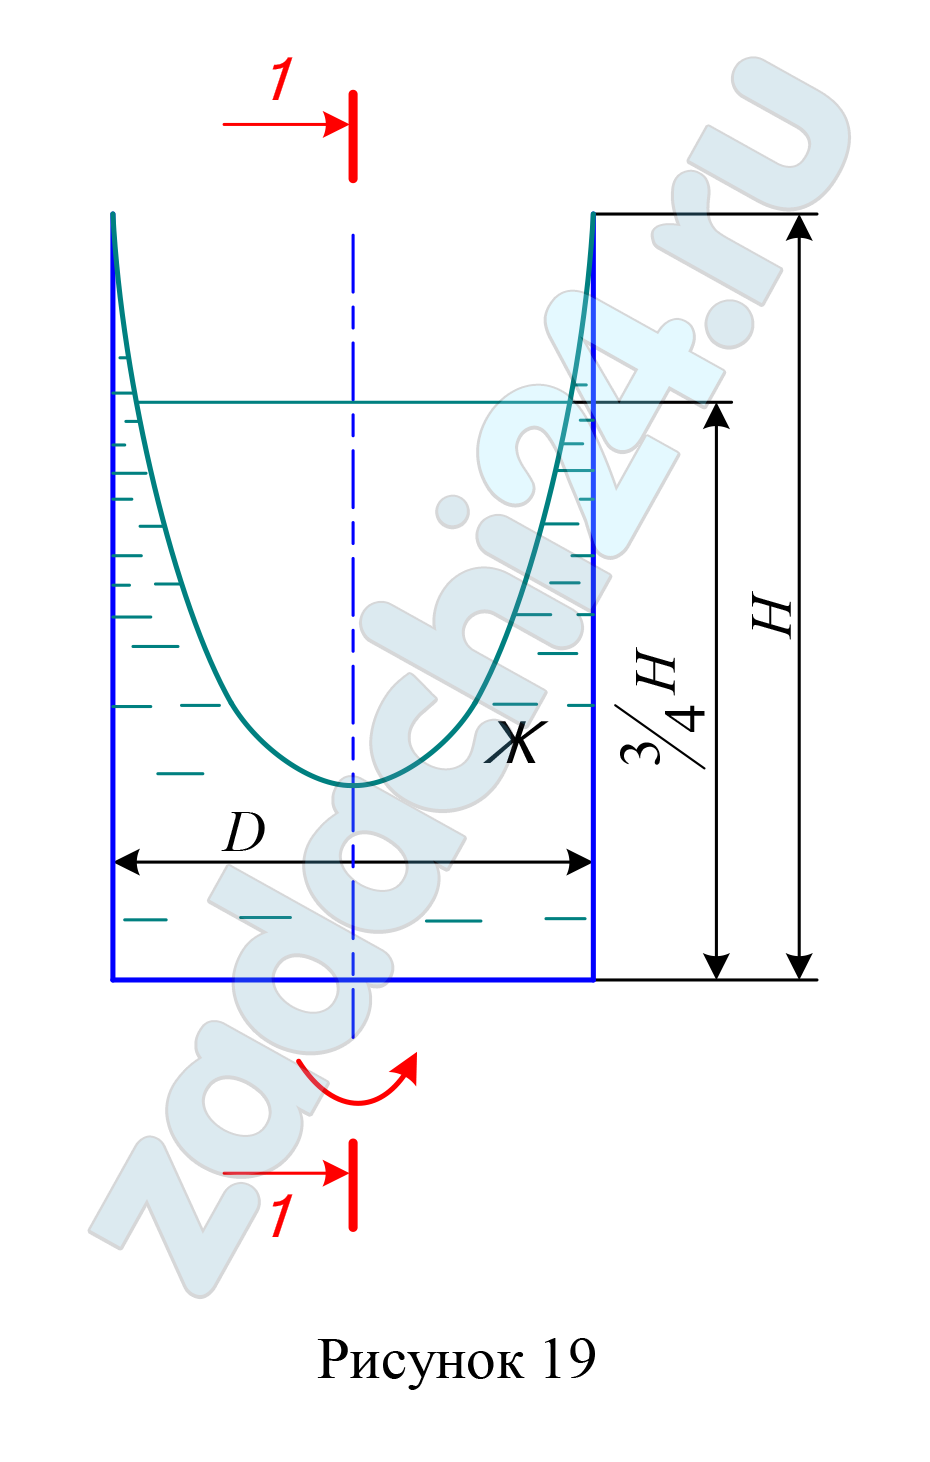 Цилиндрический резервуар заполнен жидкостью Ж до высоты 3/4Н. Диаметр резервуара D, температура жидкости 20°С. Определить (рисунок 20): 1) объем жидкости, сливающийся из резервуара при его вращении с частотой n, об/мин вокруг его вертикальной оси; 2) силу давления на дно резервуара и горизонтальную силу, разрывающую резервуар по сечению 1 – 1 при его вращении. Данные для решения задачи в соответствии с вариантом задания выбрать из таблицы 8.